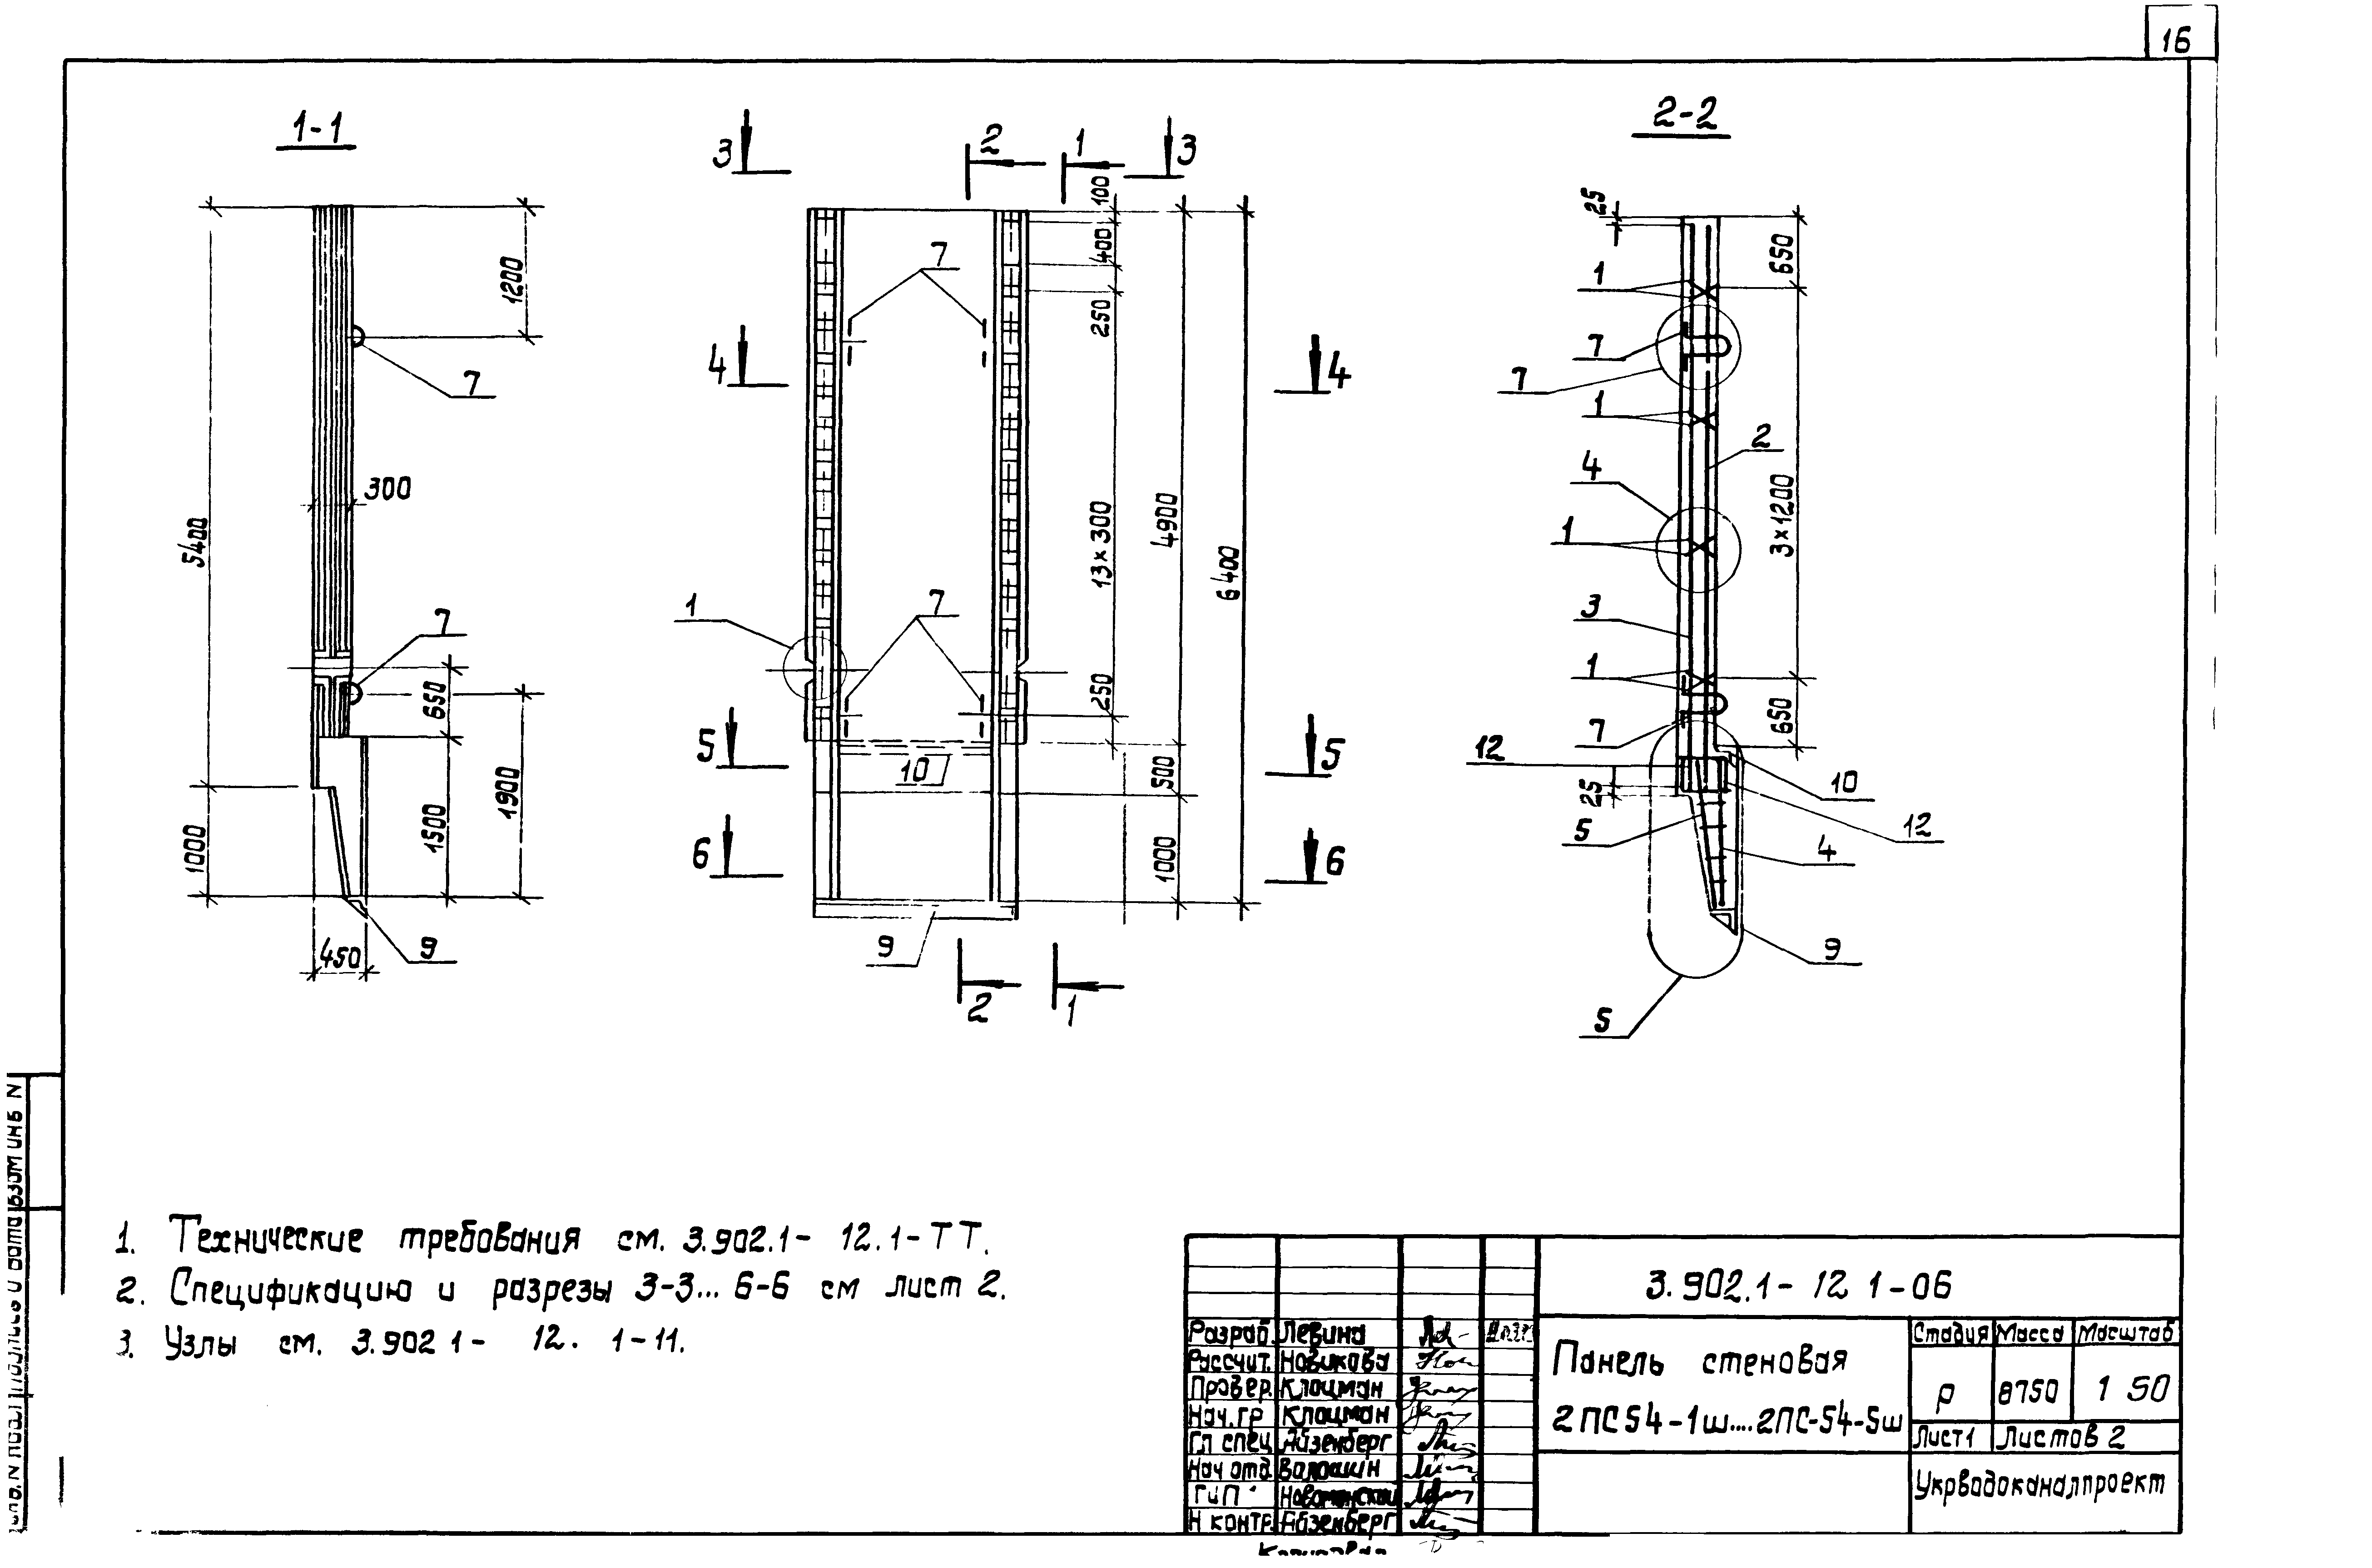 Панель стеновая 2ПС54-5ш Серия 3.902.1-12, вып.1